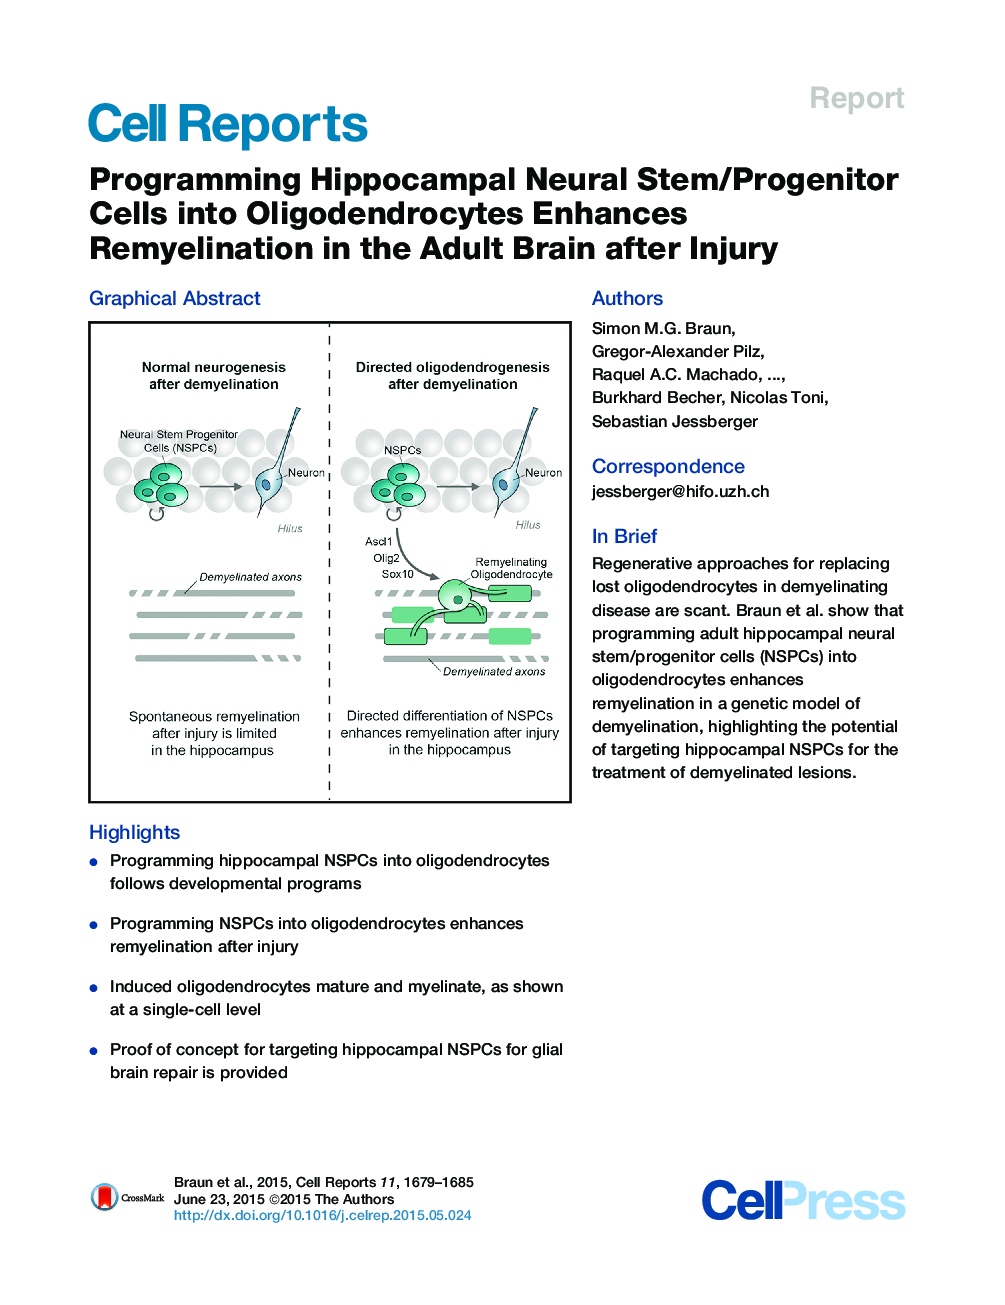 برنامه ریزی سلولهای ساقه / پروتئین عصبی هیپوکامپ در اولیگودندروسسیتها باعث افزایش ریمیلیناسین در مغز بزرگسالان پس از جراحت می شود. 